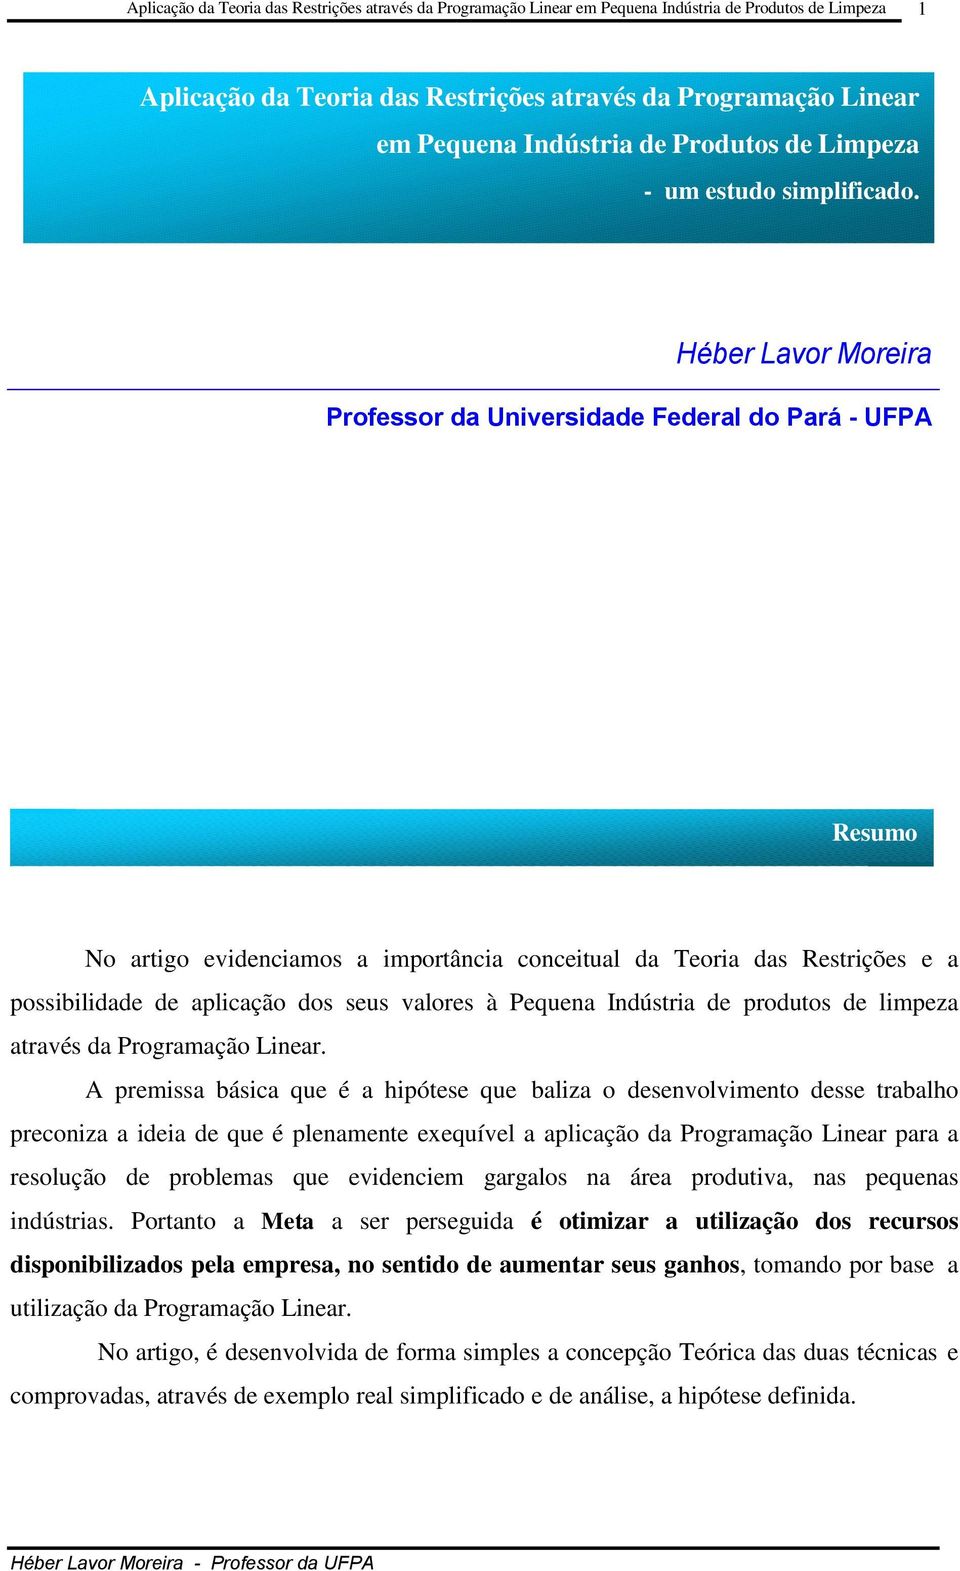 Héber Lavor Moreira Professor da Universidade Federal do Pará - UFPA Resumo No artigo evidenciamos a importância conceitual da Teoria das Restrições e a possibilidade de aplicação dos seus valores à